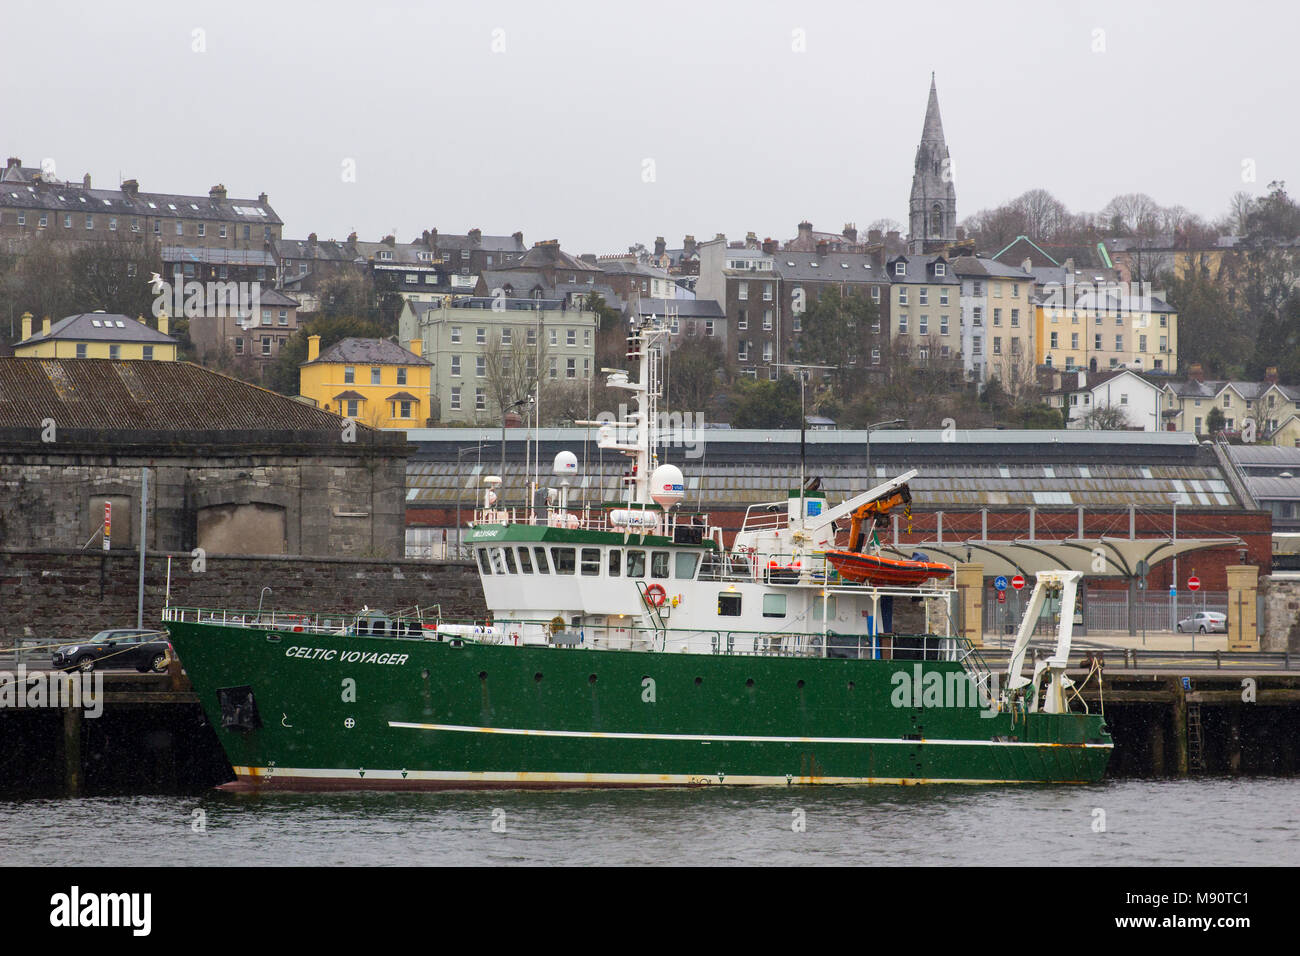 18 mars 2018 Le Port de Cork Irlande l'Institut de marine bateau de recherche de voyager sur son poste d'amarrage celtique pendant une tempête de neige à la fin de l'hiver Banque D'Images